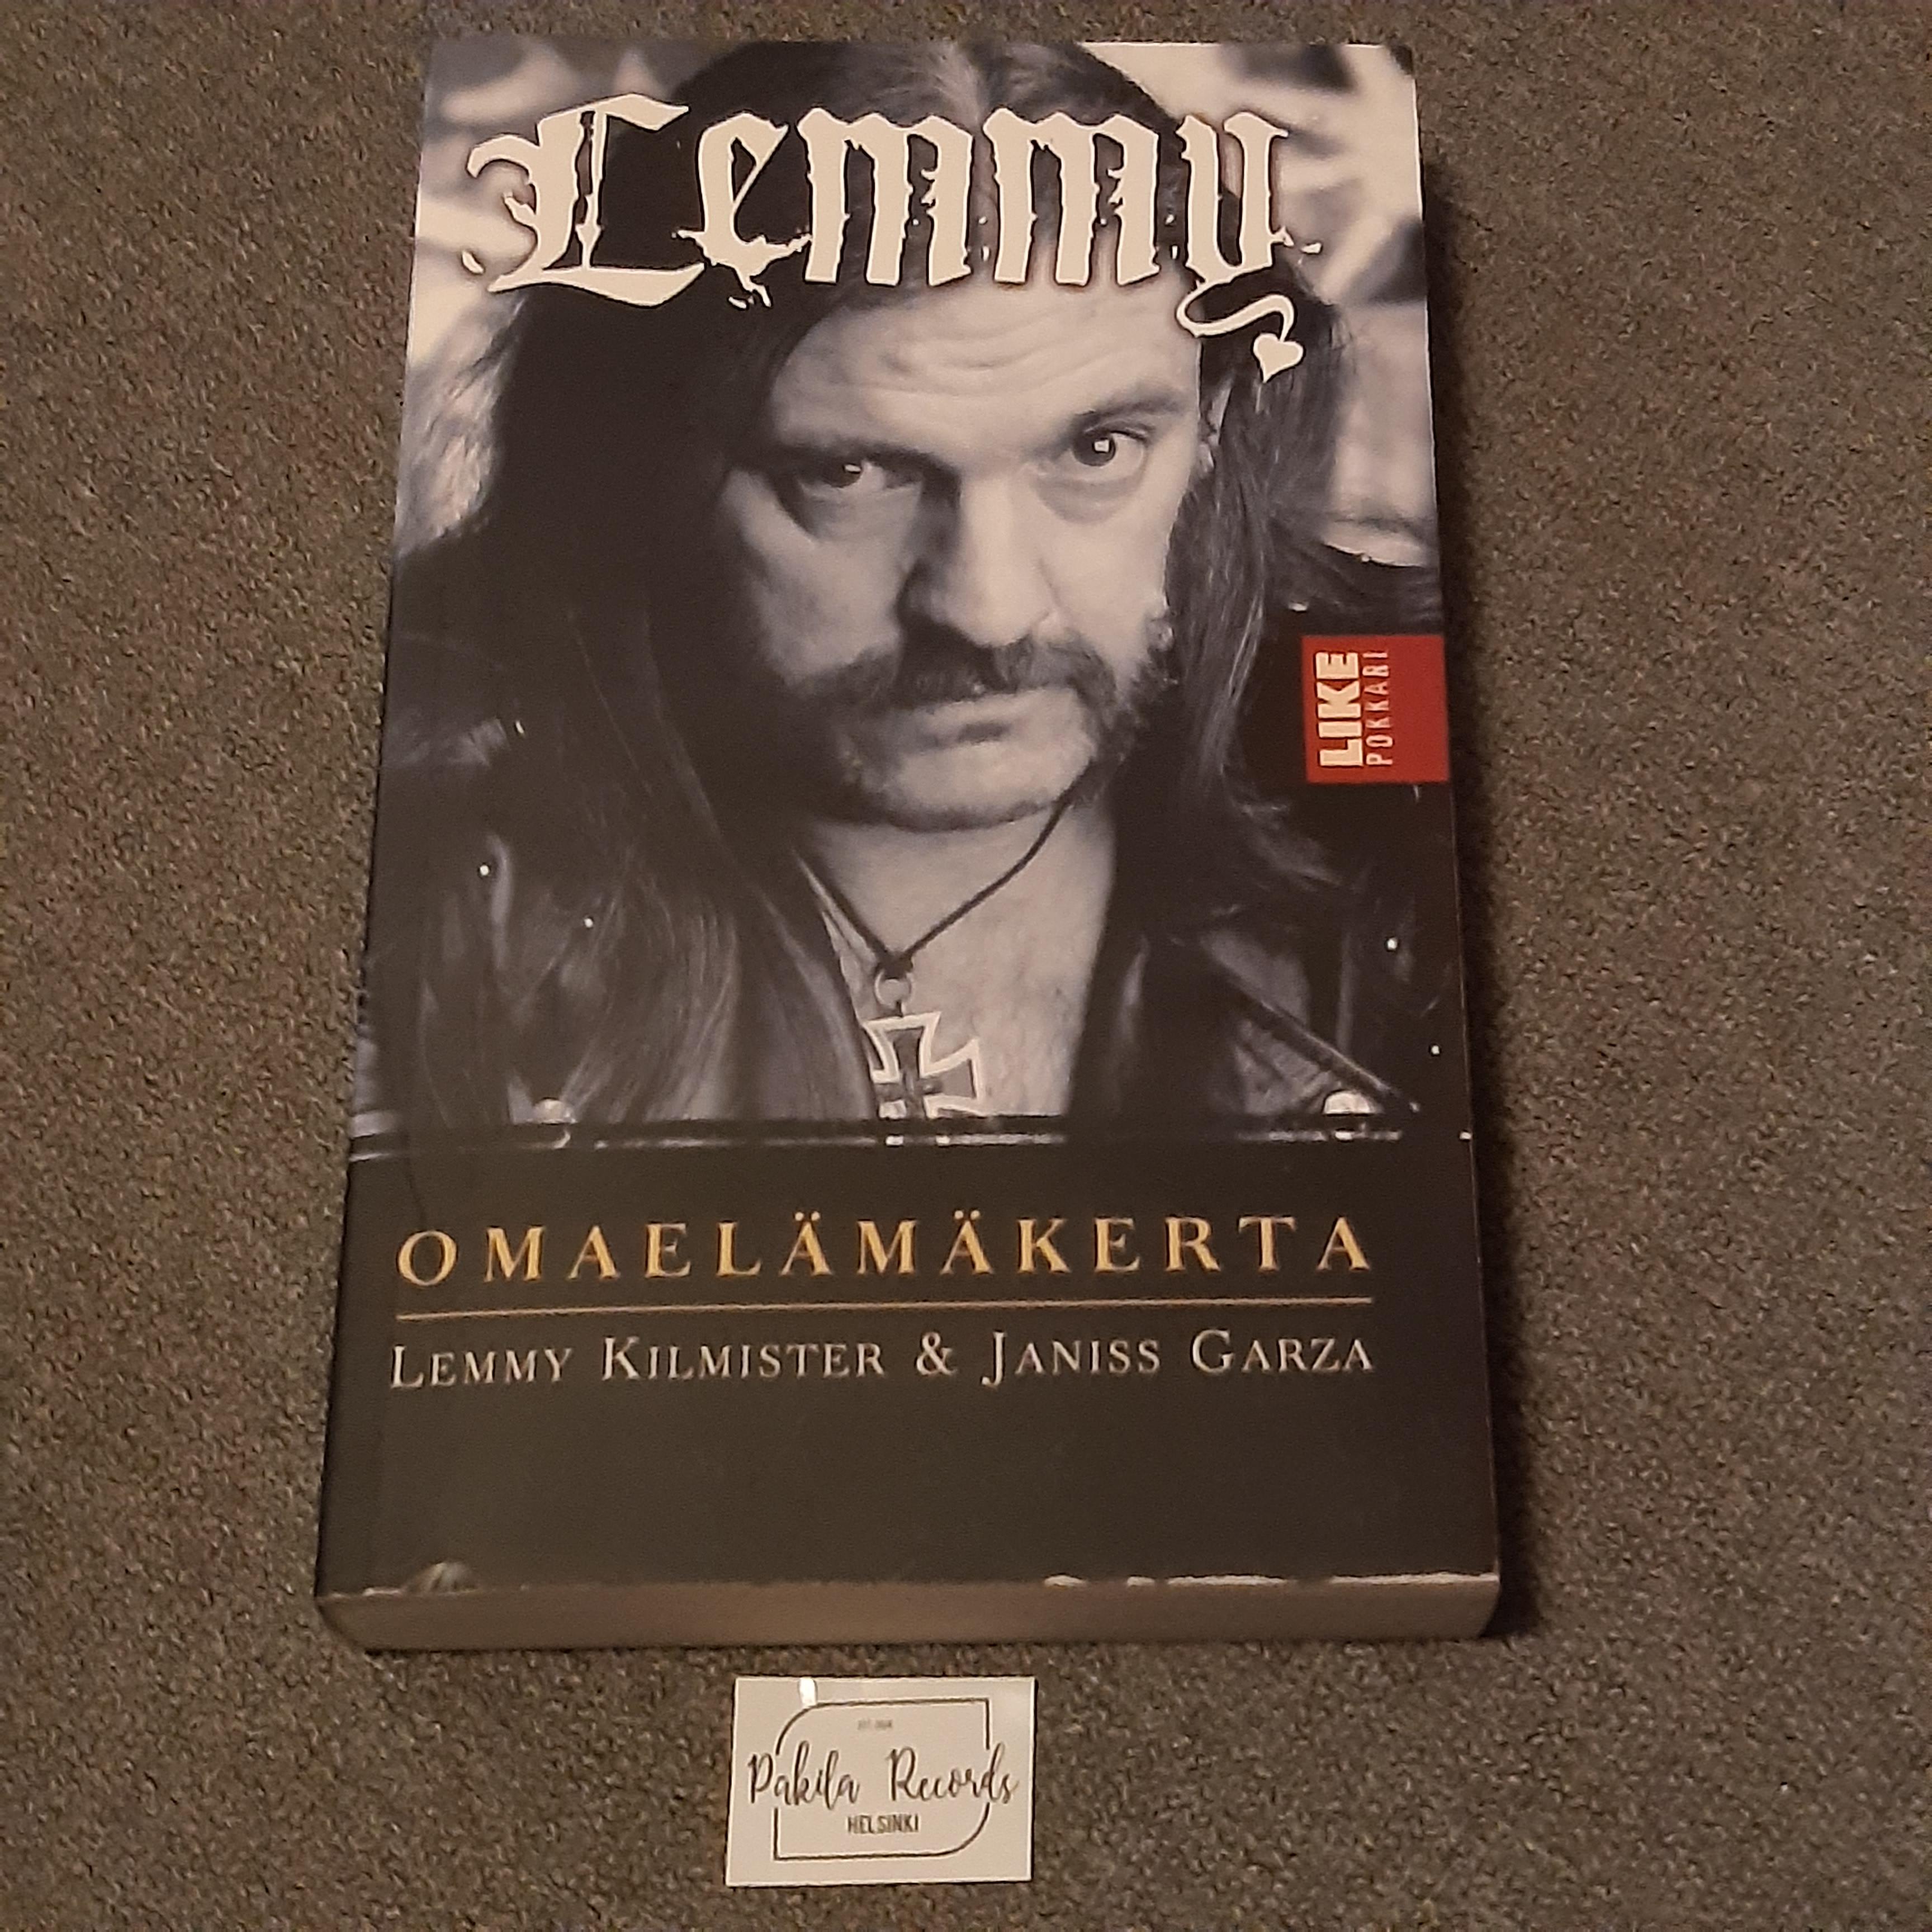 Lemmy, Omaelämäkerta - Lemmy Kilmister & Janiss Garza - Kirja (käytetty)